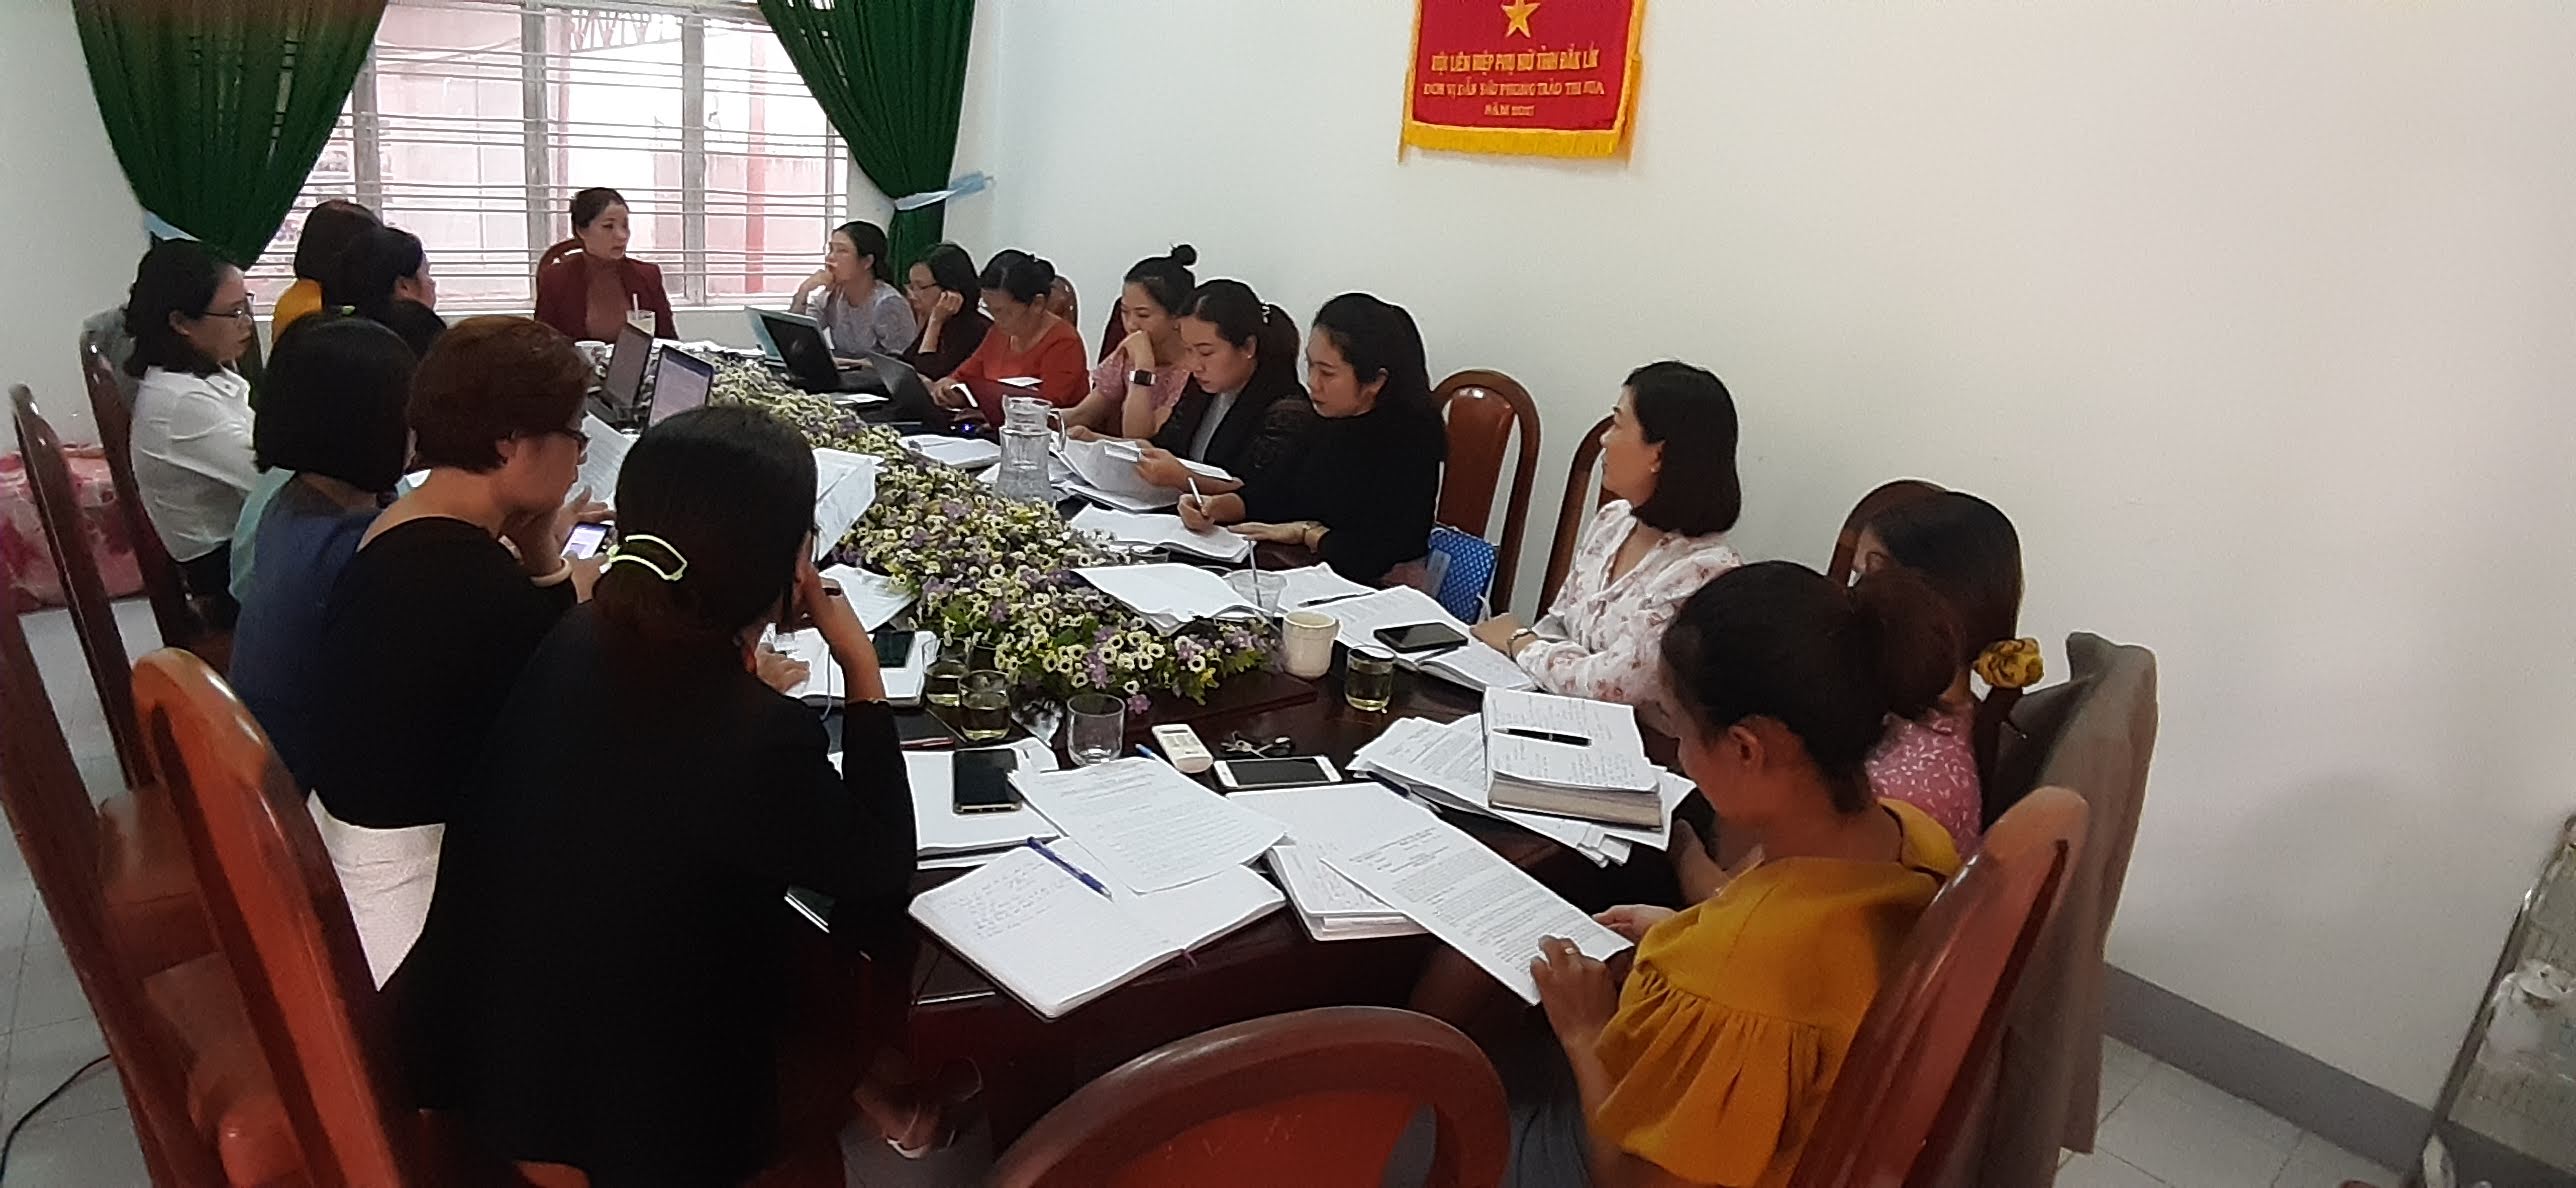 Hội LHPN thị trấn Quảng Phú, huyện Cư M’gar chuẩn bị tốt cho đại hội điểm cấp cơ sở